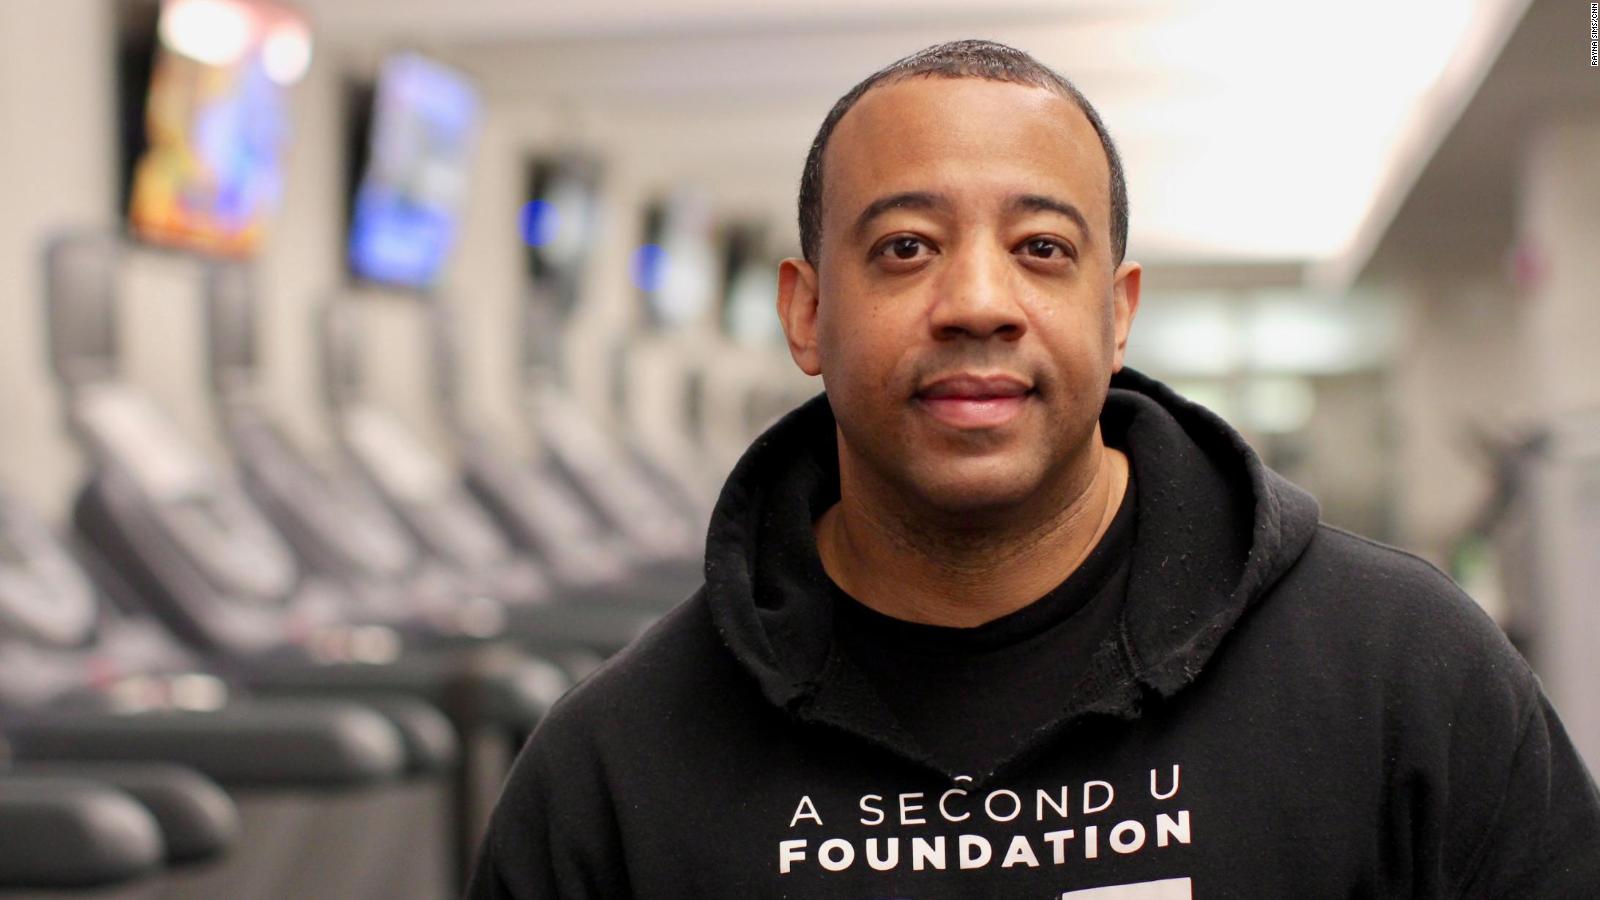 La libertad a través del fitness: La fórmula de este héroe de la CNN evita que los ex delincuentes vuelvan a la cárcel